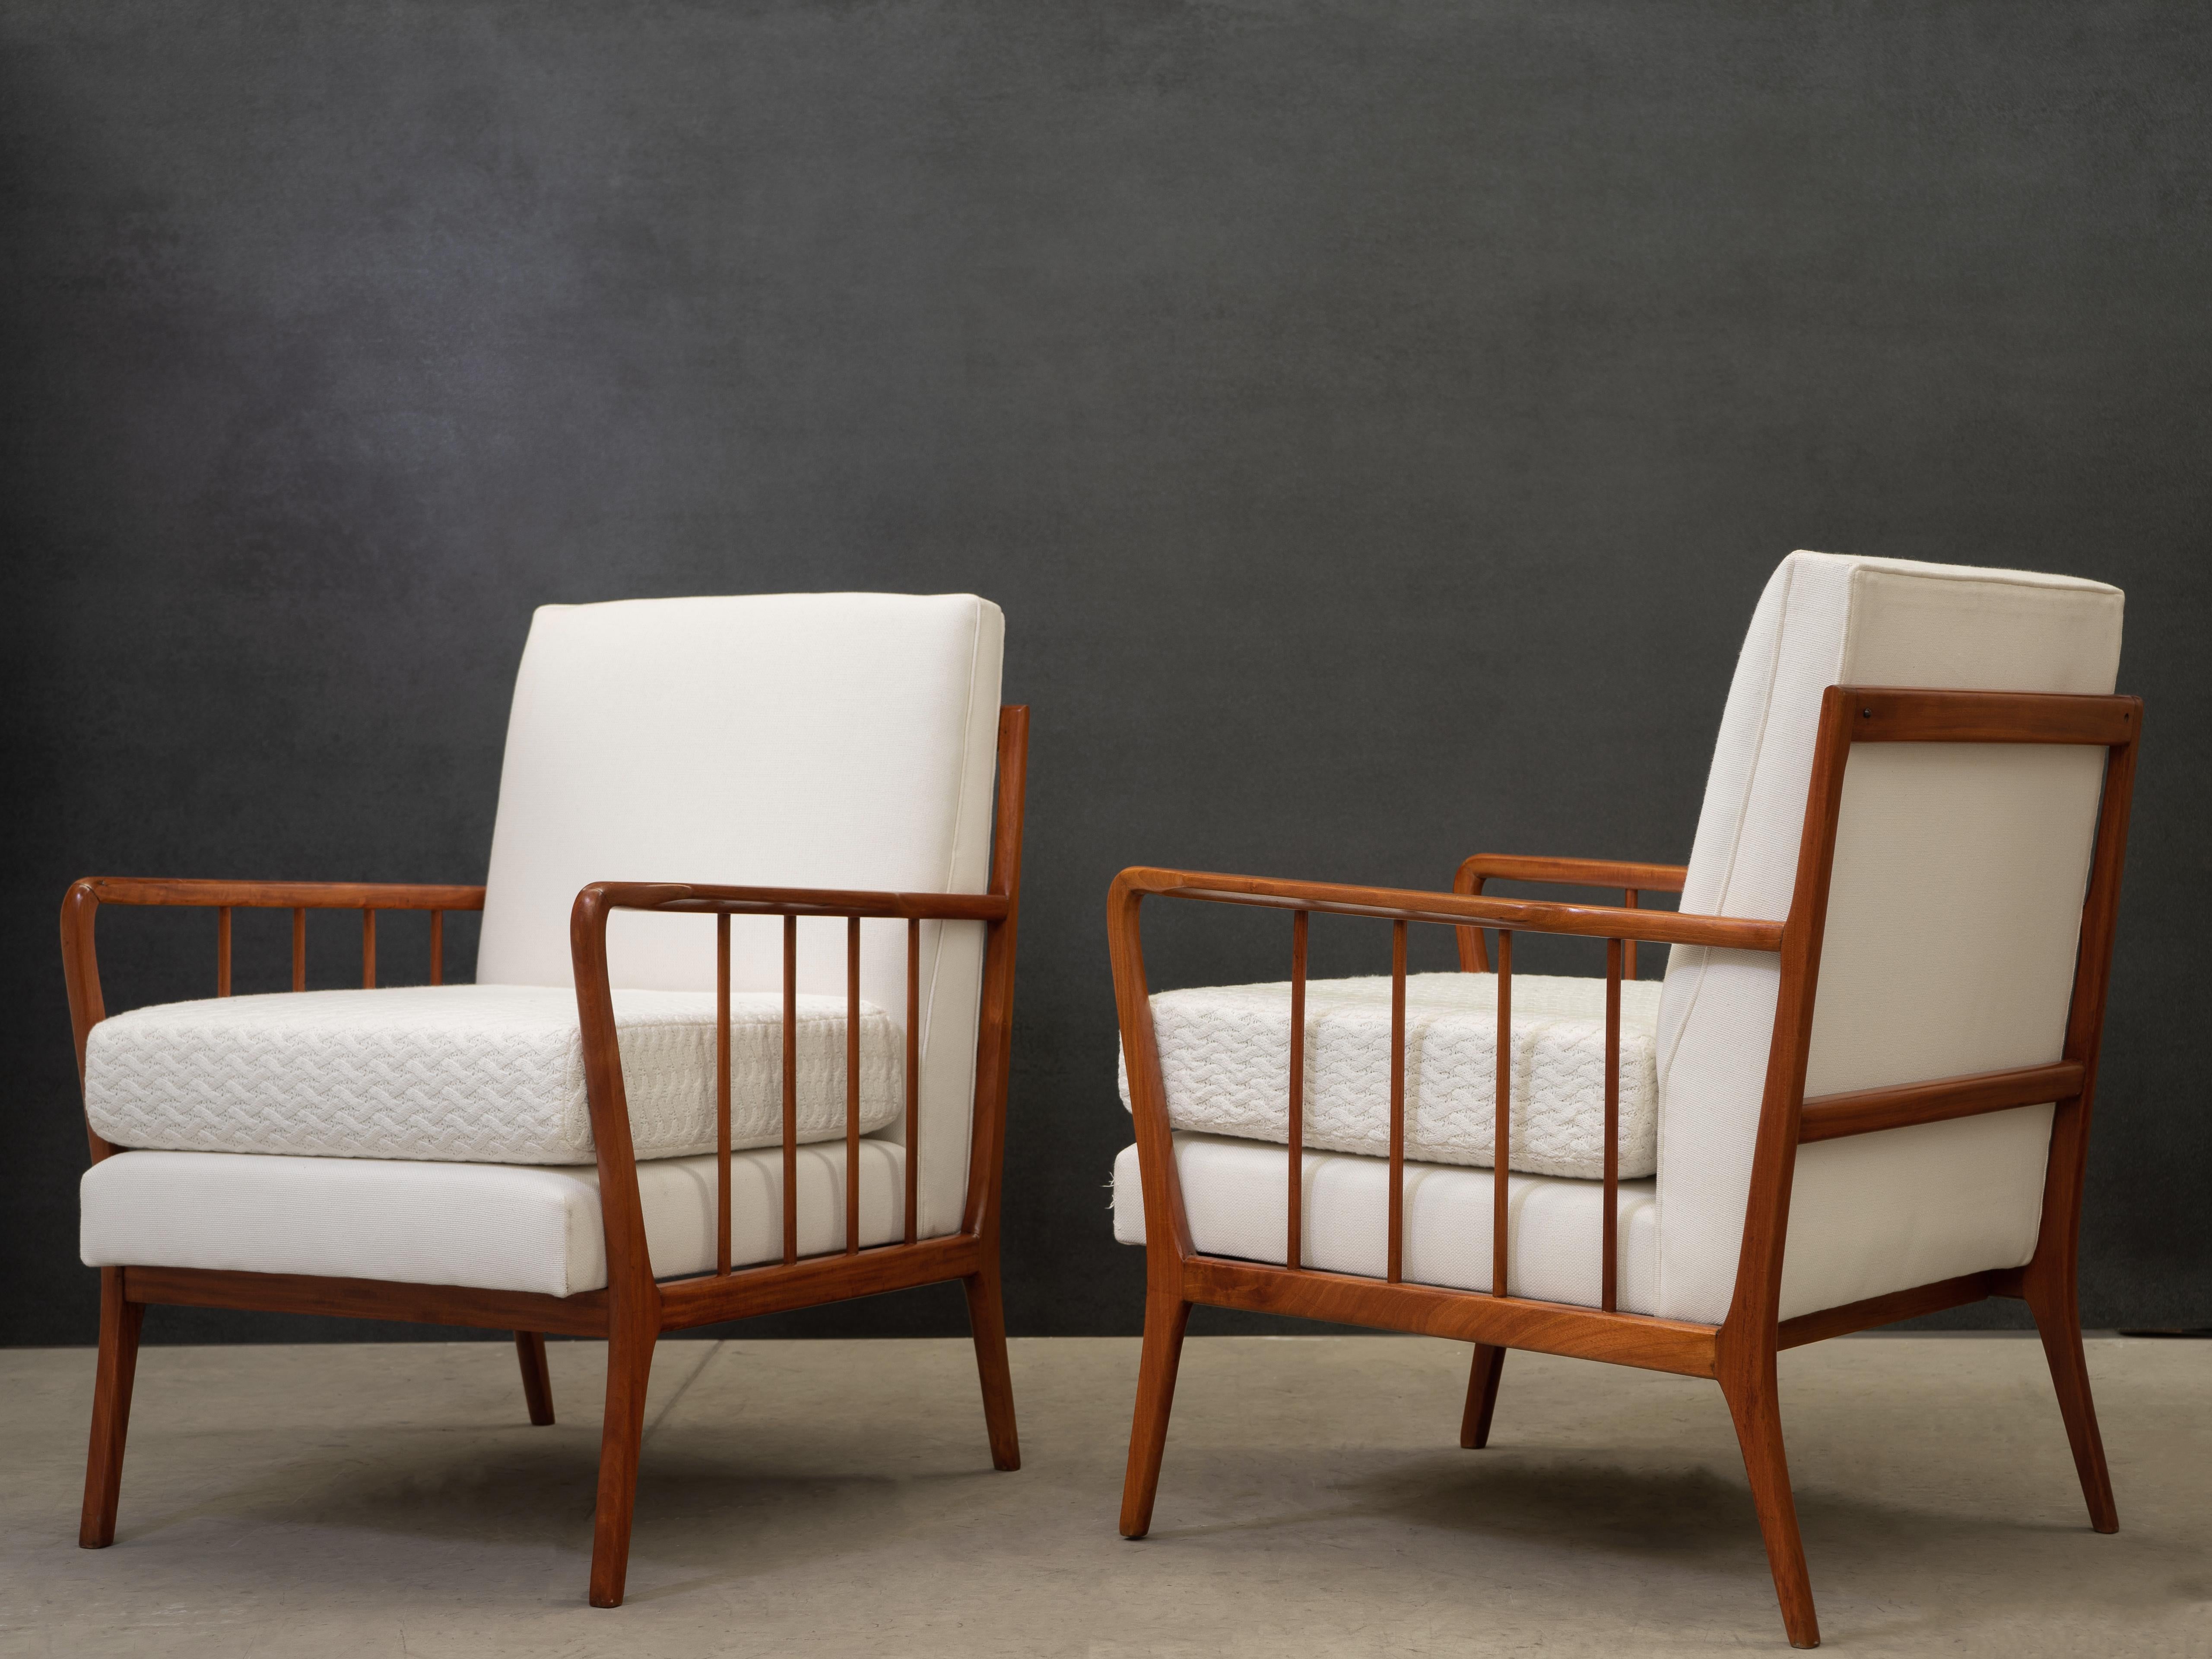 Das von Rino Levi's entworfene Sesselpaar ist aus Caviuna-Holz, einer Art Jacaranda-Palisander, gefertigt. Der Stuhl hat einen einzigartigen Herstellungsstempel und wurde kürzlich mit feiner weißer Strickwolle und Leinen in der Rückenlehne